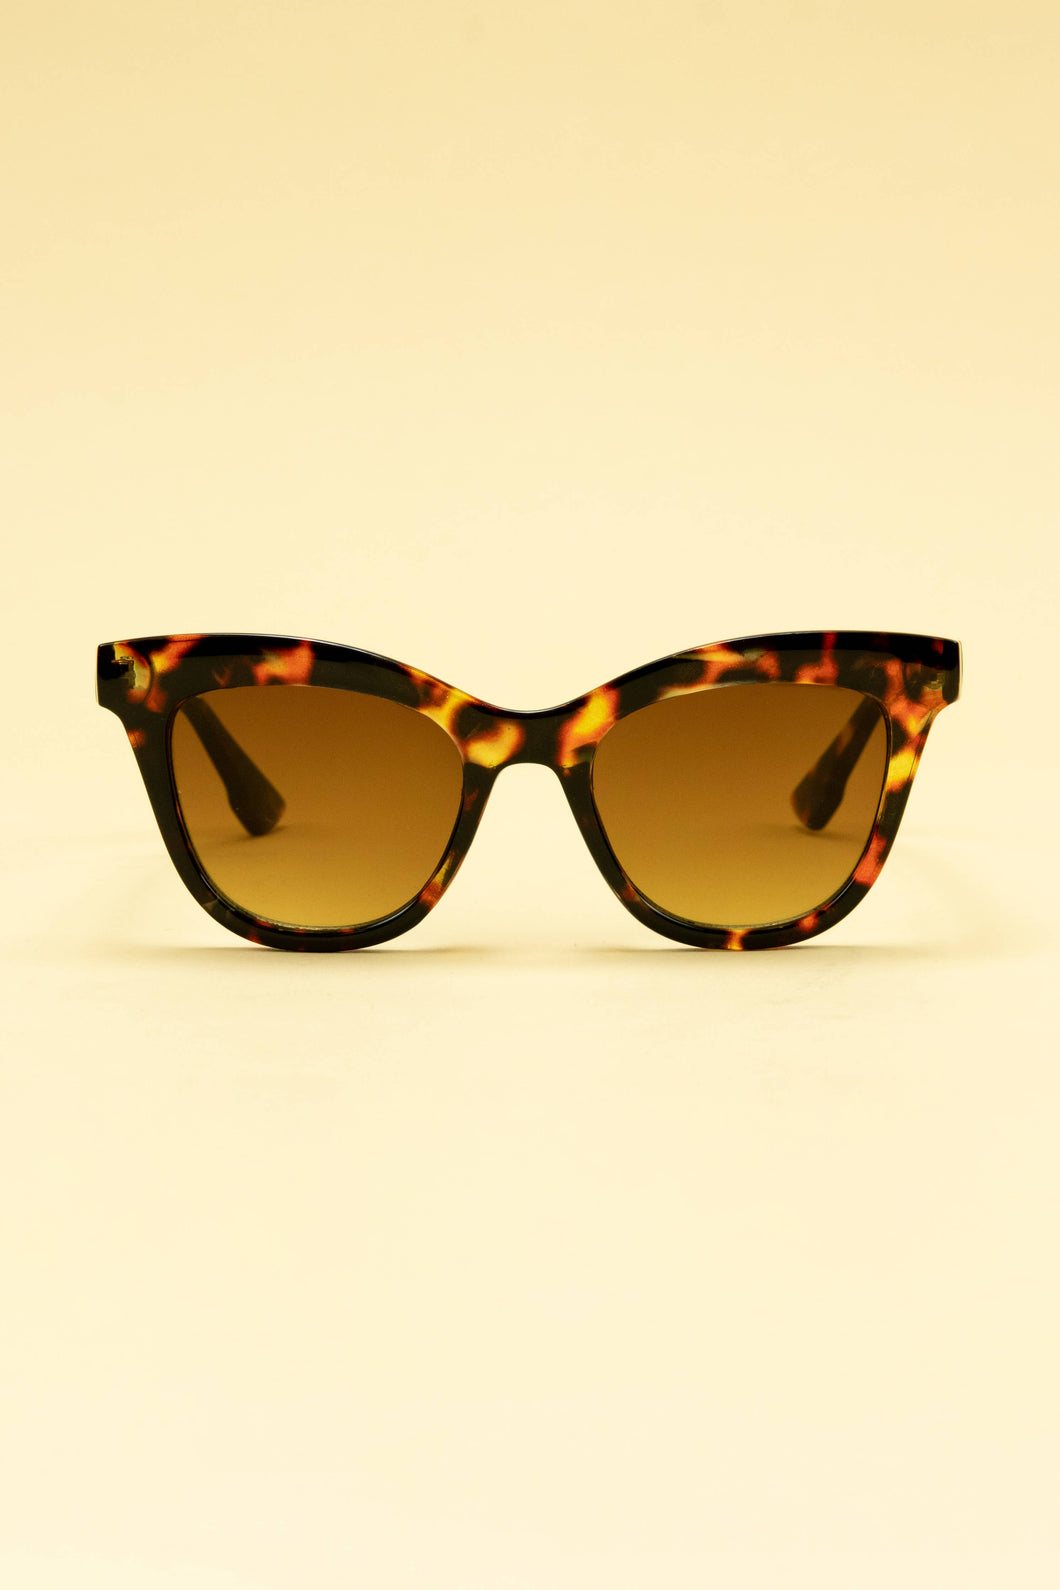 Nadia Limited Edition Sunglasses - Tortoiseshell